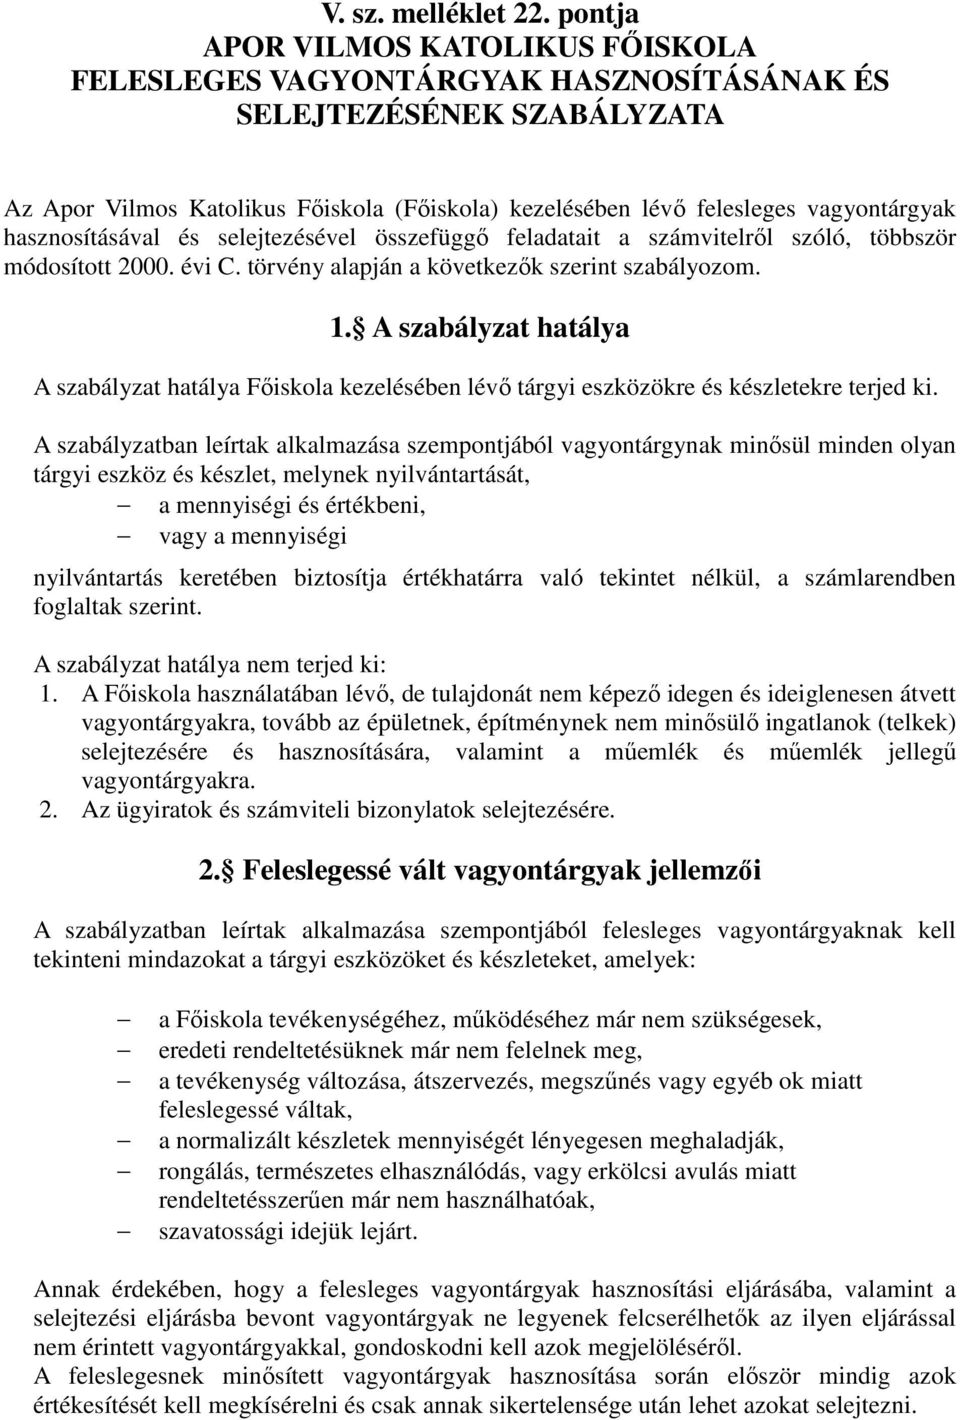 hasznosításával és selejtezésével összefüggı feladatait a számvitelrıl szóló, többször módosított 2000. évi C. törvény alapján a következık szerint szabályozom. 1.